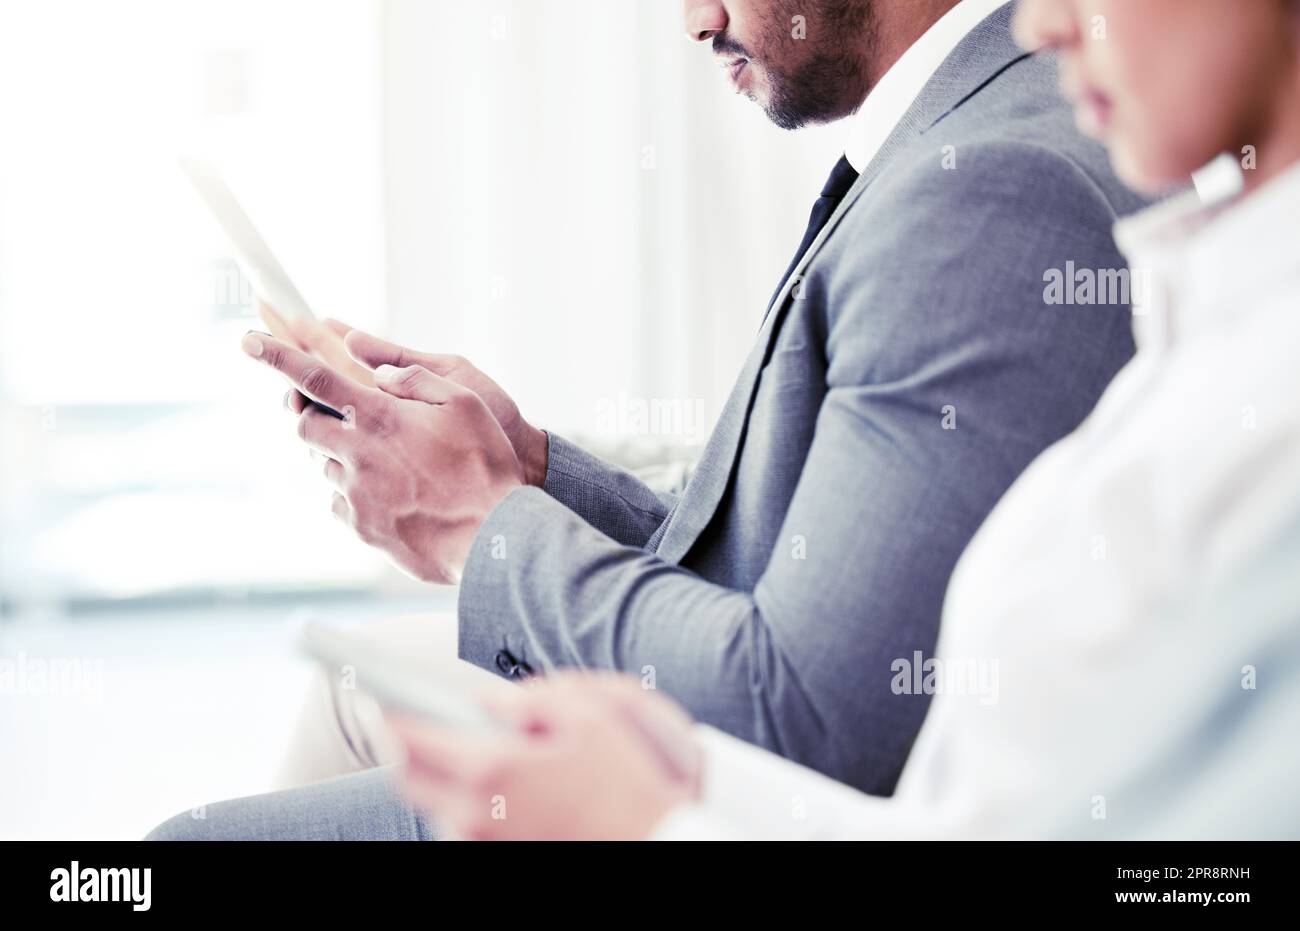 Un compagnon numérique pour vous aider à passer le temps. Gros plan d'un homme d'affaires méconnu utilisant une tablette numérique tout en étant assis dans la file d'attente dans un bureau. Banque D'Images